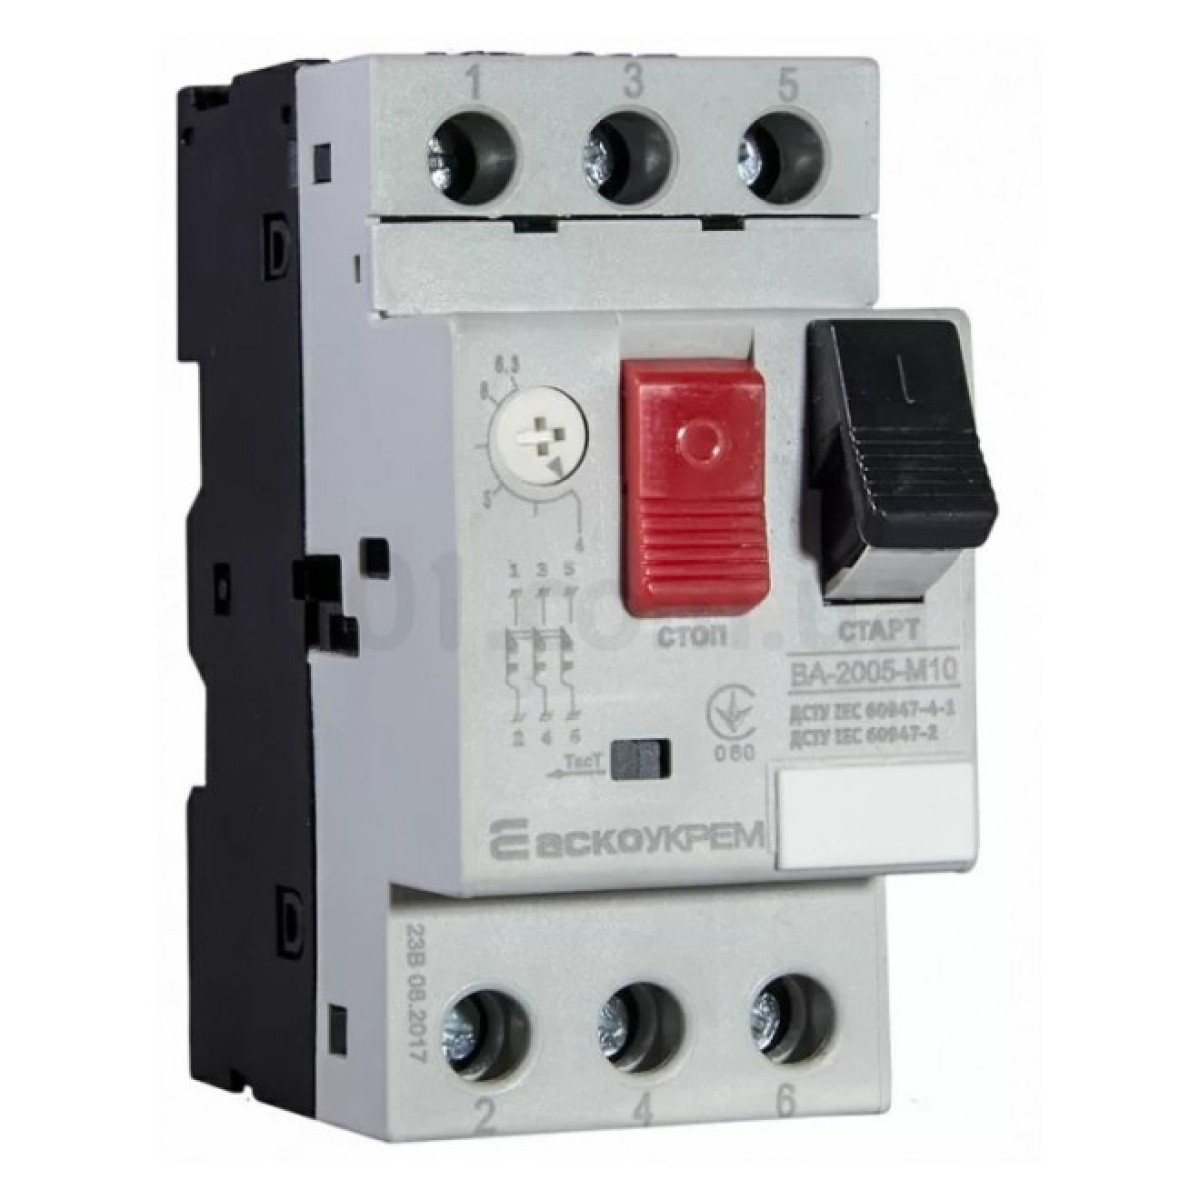 Автоматический выключатель защиты двигателя ВА-2005 М10 4-6,3А, АСКО-УКРЕМ 256_256.jpg